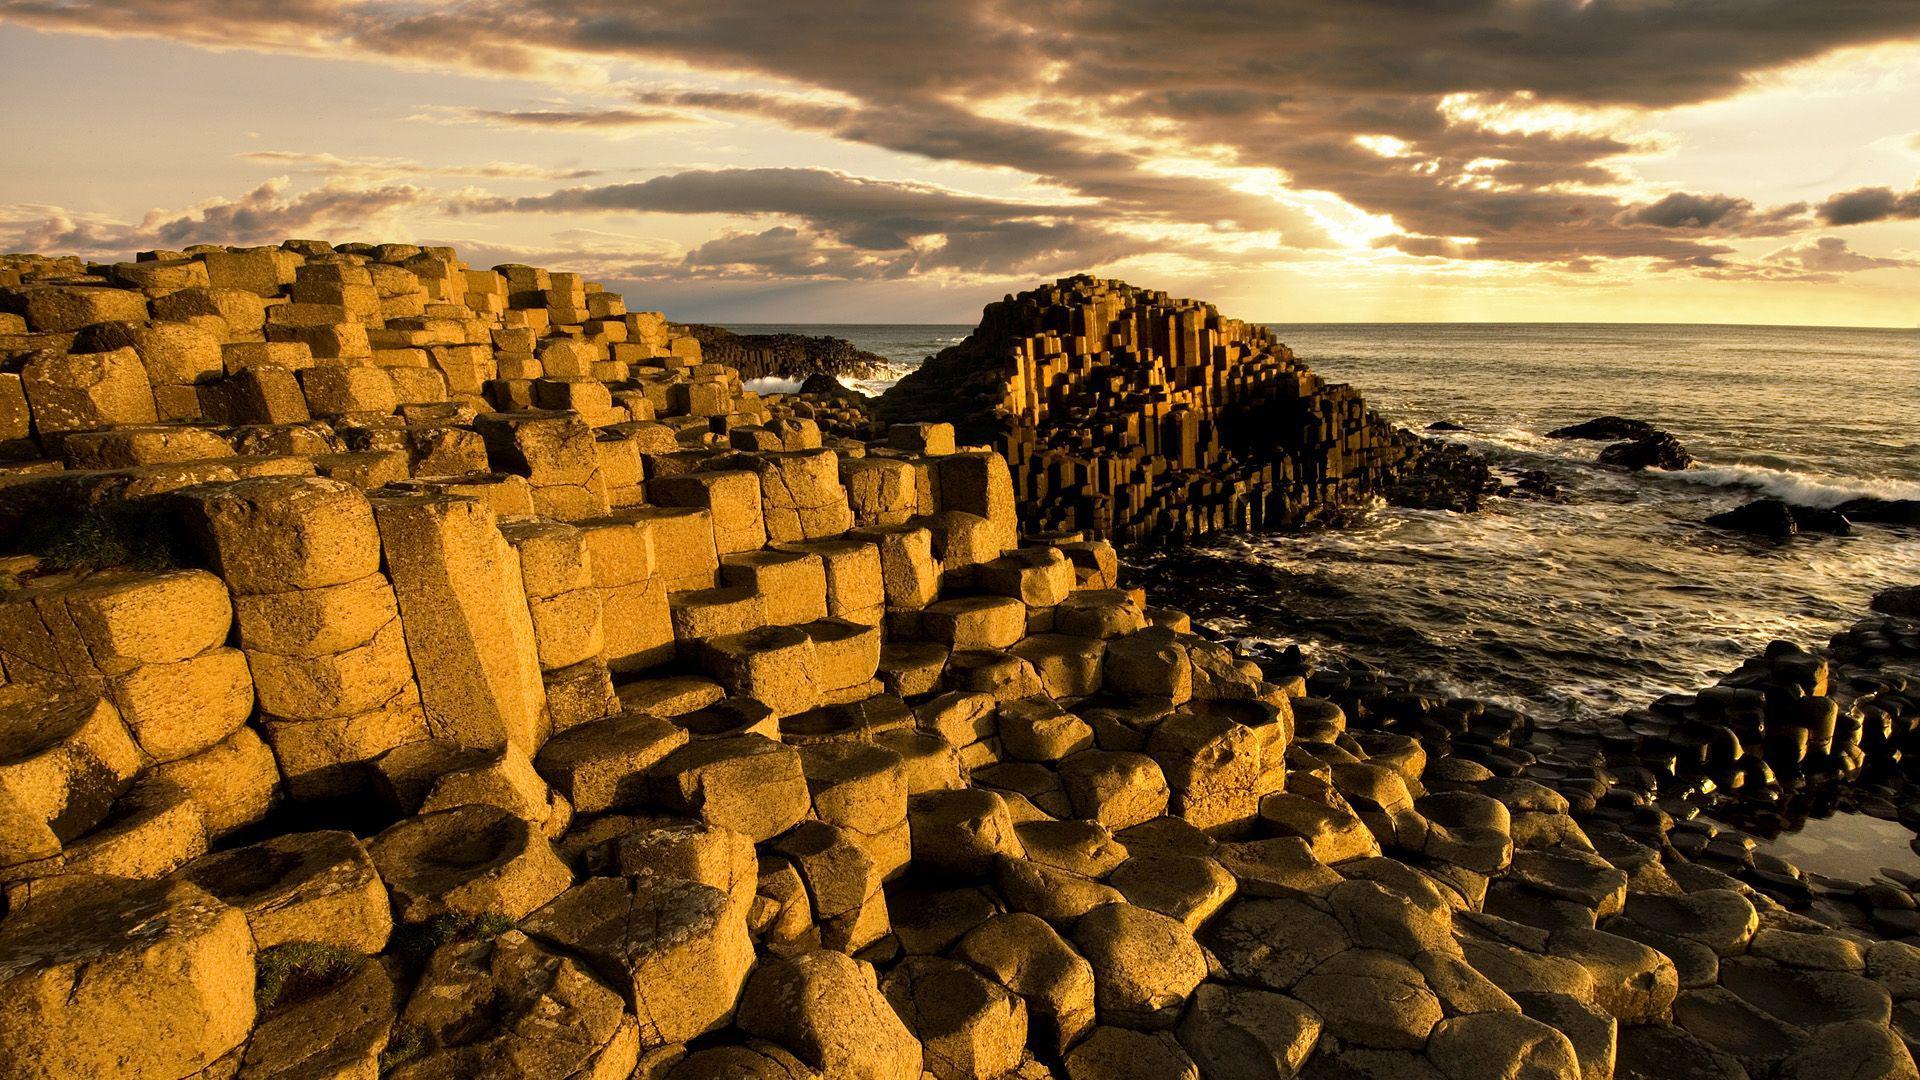 بک گراند ساحل سنگی پلکانی یکی از بهترین مناظر طبیعی